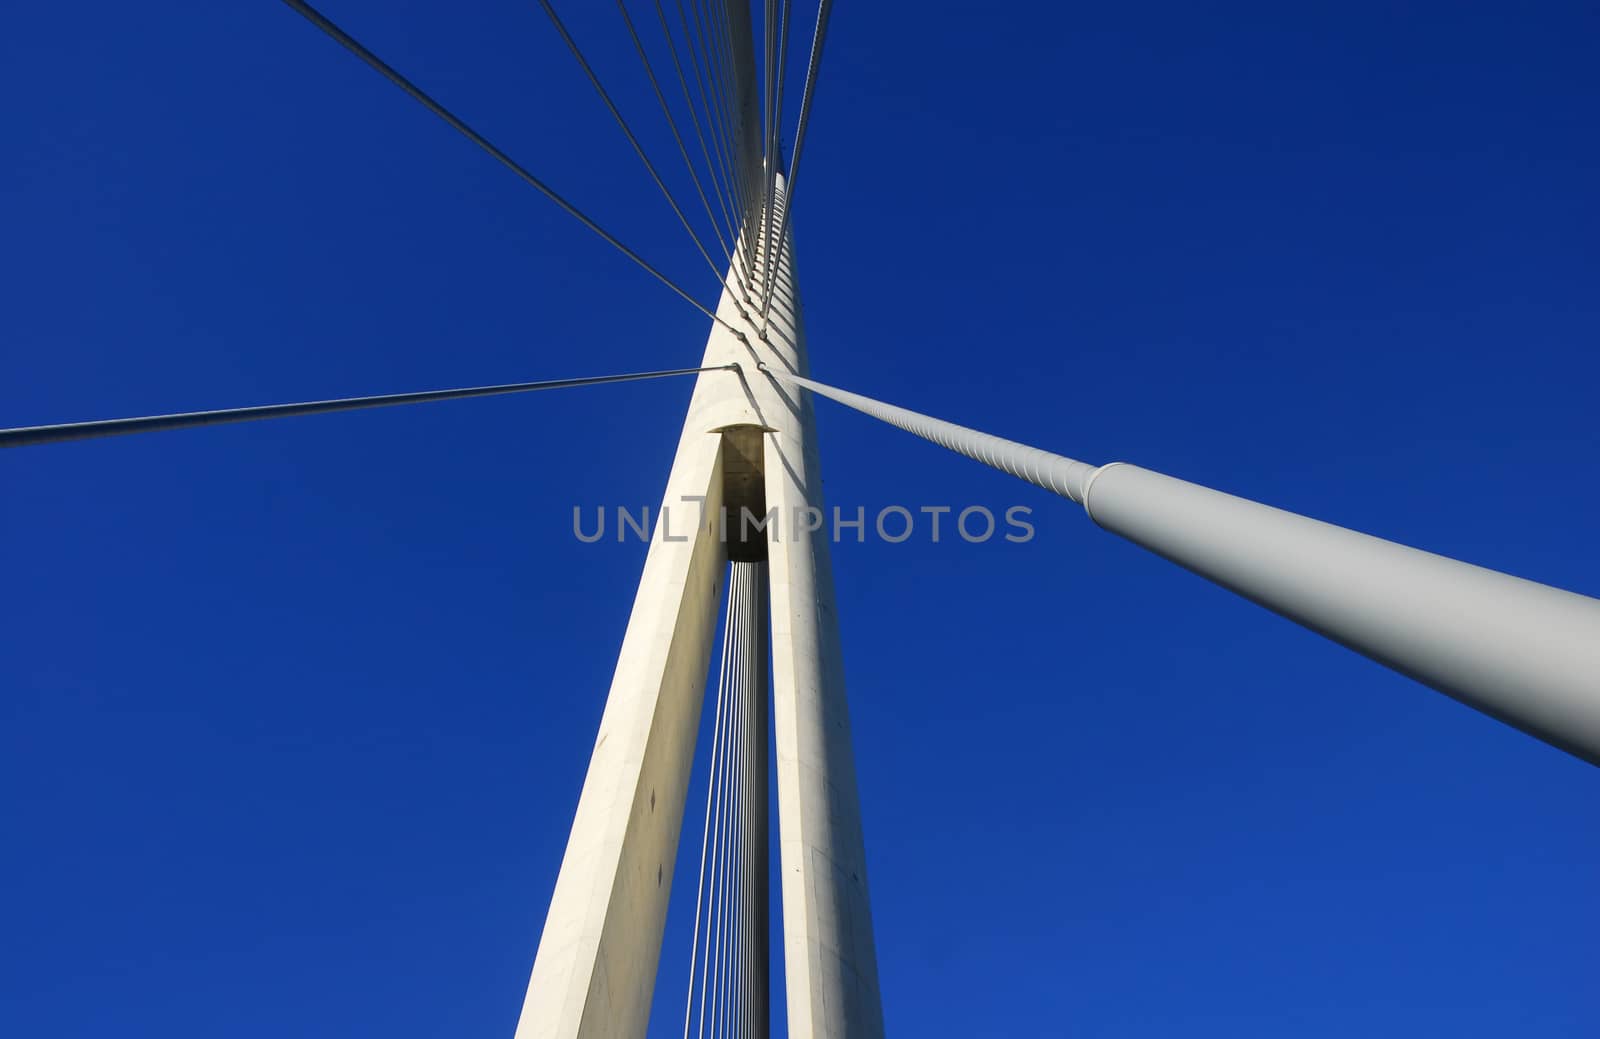 Details of Ada bridge tower in Belgrade, Serbia by simply